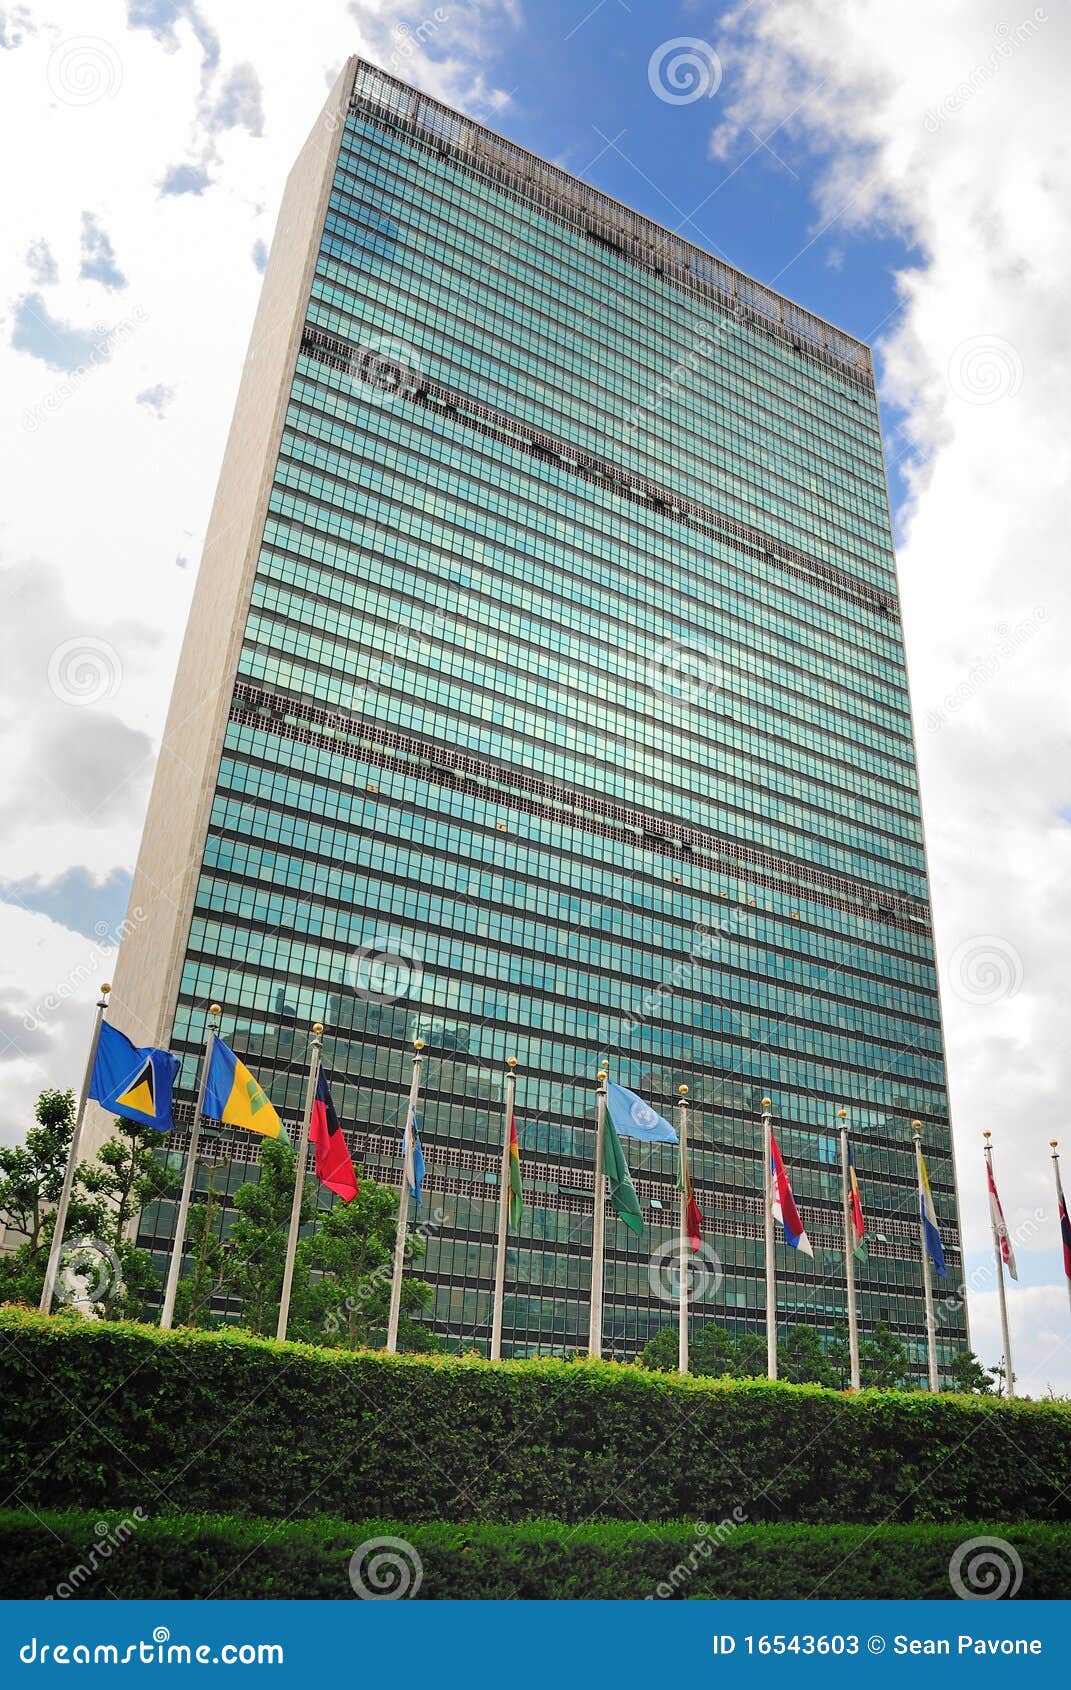 L'assemblea generale delle Nazioni Unite è uno dei sei organi principali delle Nazioni Unite e quello unico in cui tutti i nazione membri hanno rappresentazione uguale. Le sedi delle Nazioni Unite è un complesso distintivo a New York City che ha servito da sedi ufficiali delle Nazioni Unite dal suo completamento in 1952. Benchè sia a New York City, lo sbarco occupato dalle sedi di Nazioni Unite è considerato territorio internazionale ed occupa 17 acri.